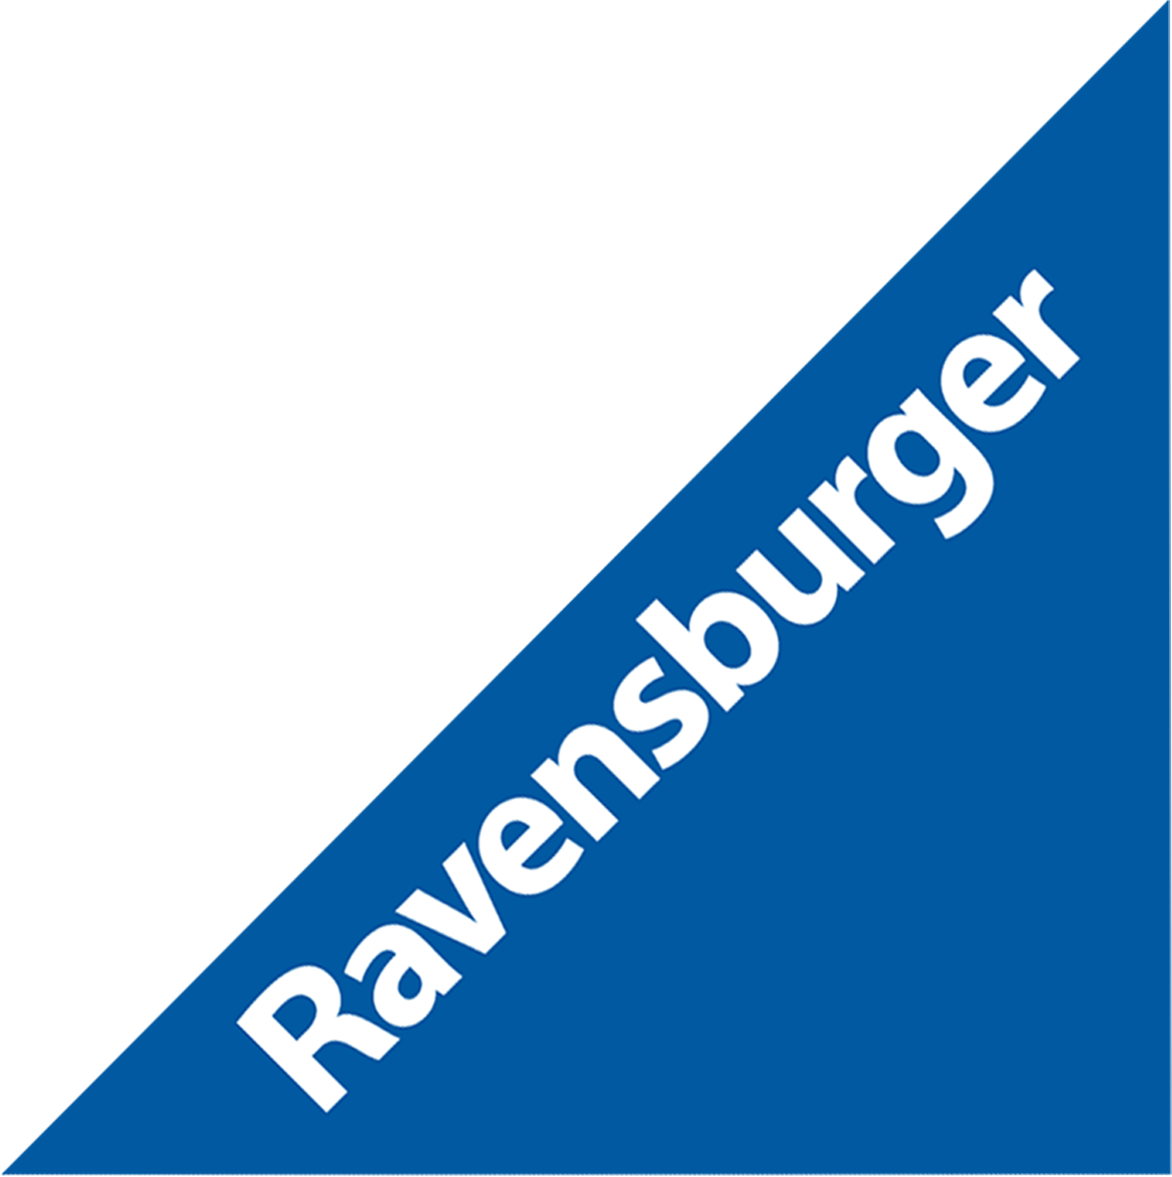 Lire la suite à propos de l’article Partenaires éditeurs Olor’on Joue 2017 : Ravensburger